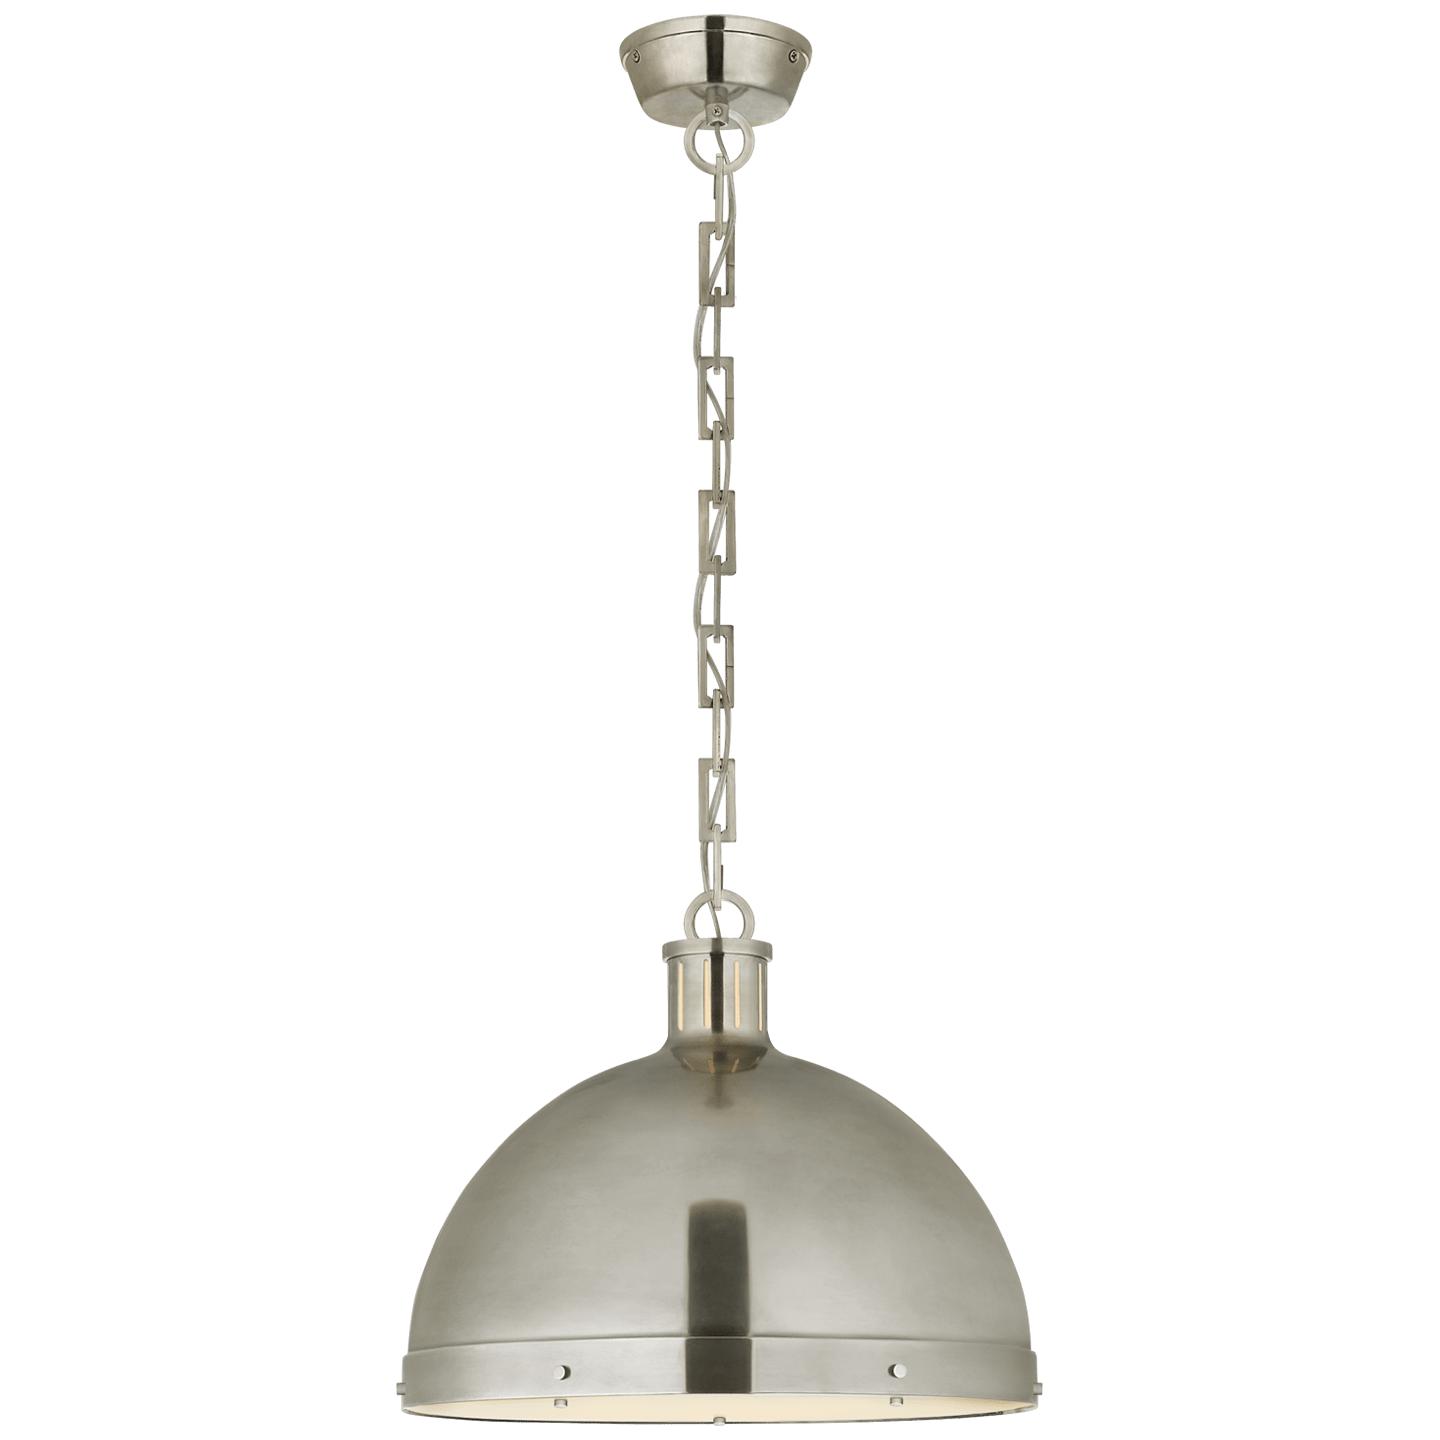 Купить Подвесной светильник Hicks Extra Large Pendant в интернет-магазине roooms.ru